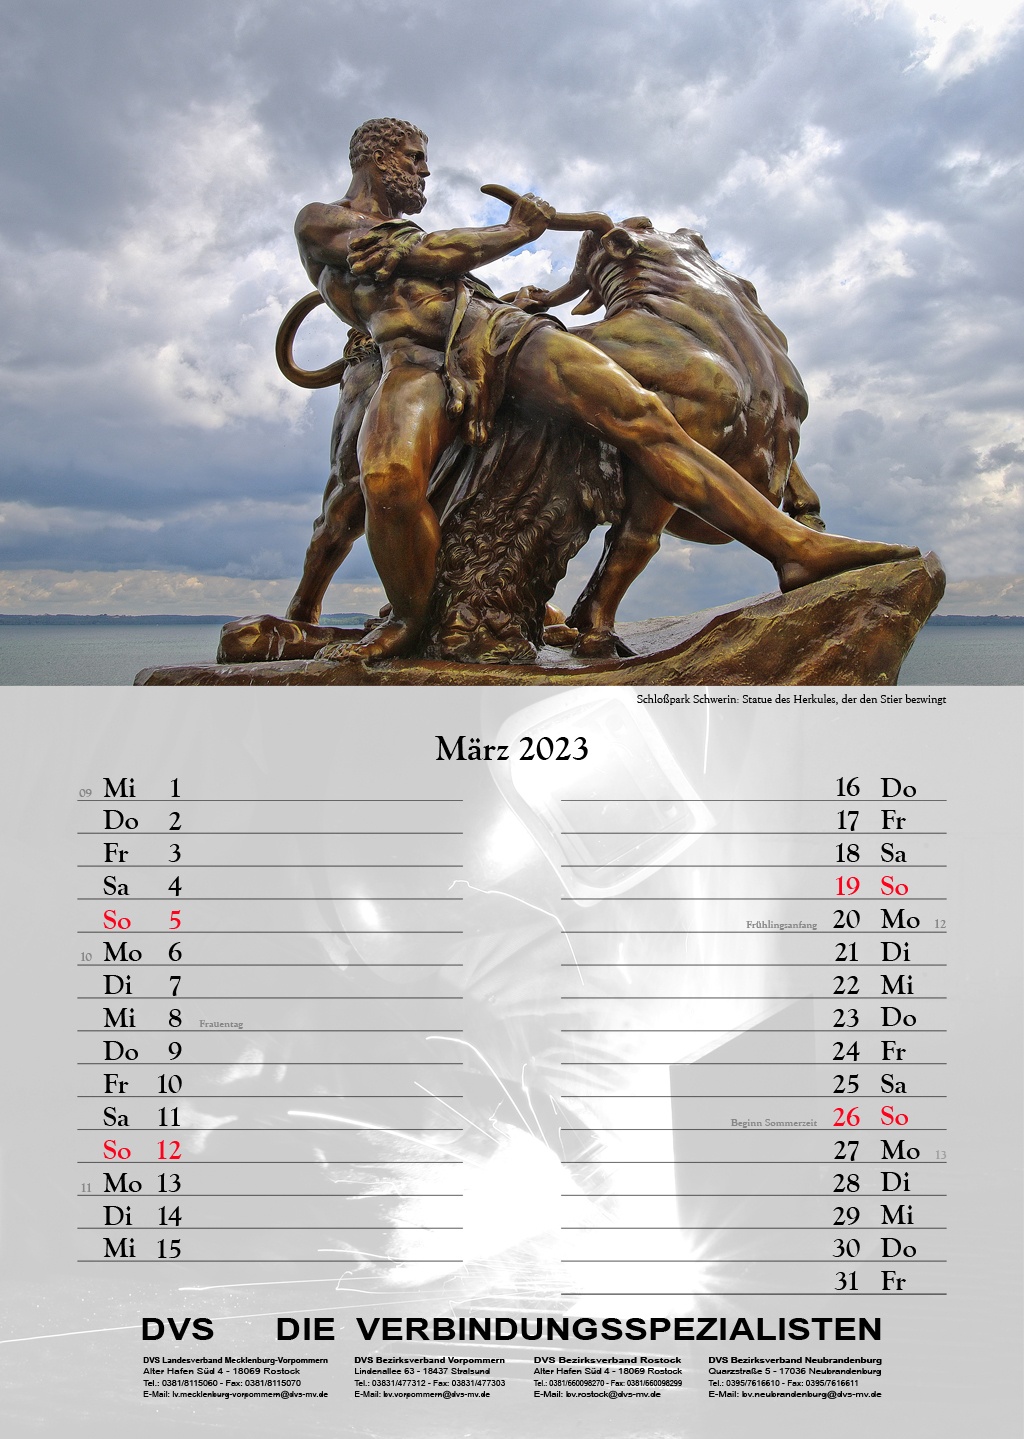 Schloßpark Schwerin: Statue des Herkules, der den Stier bezwingt